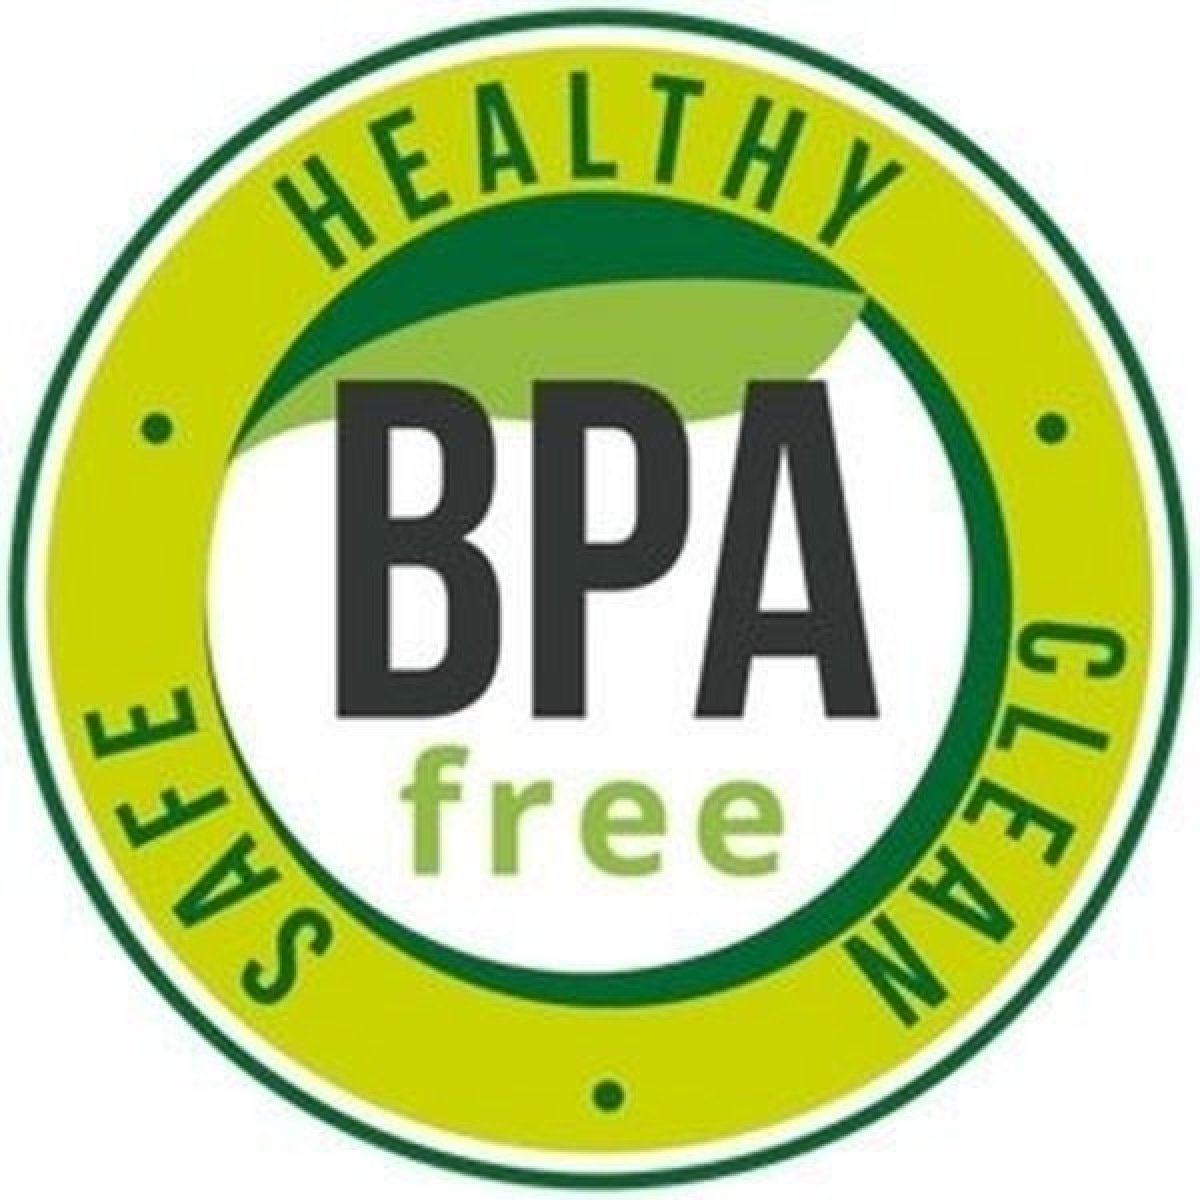 Zdravotne nezávadné BPA free zloženie